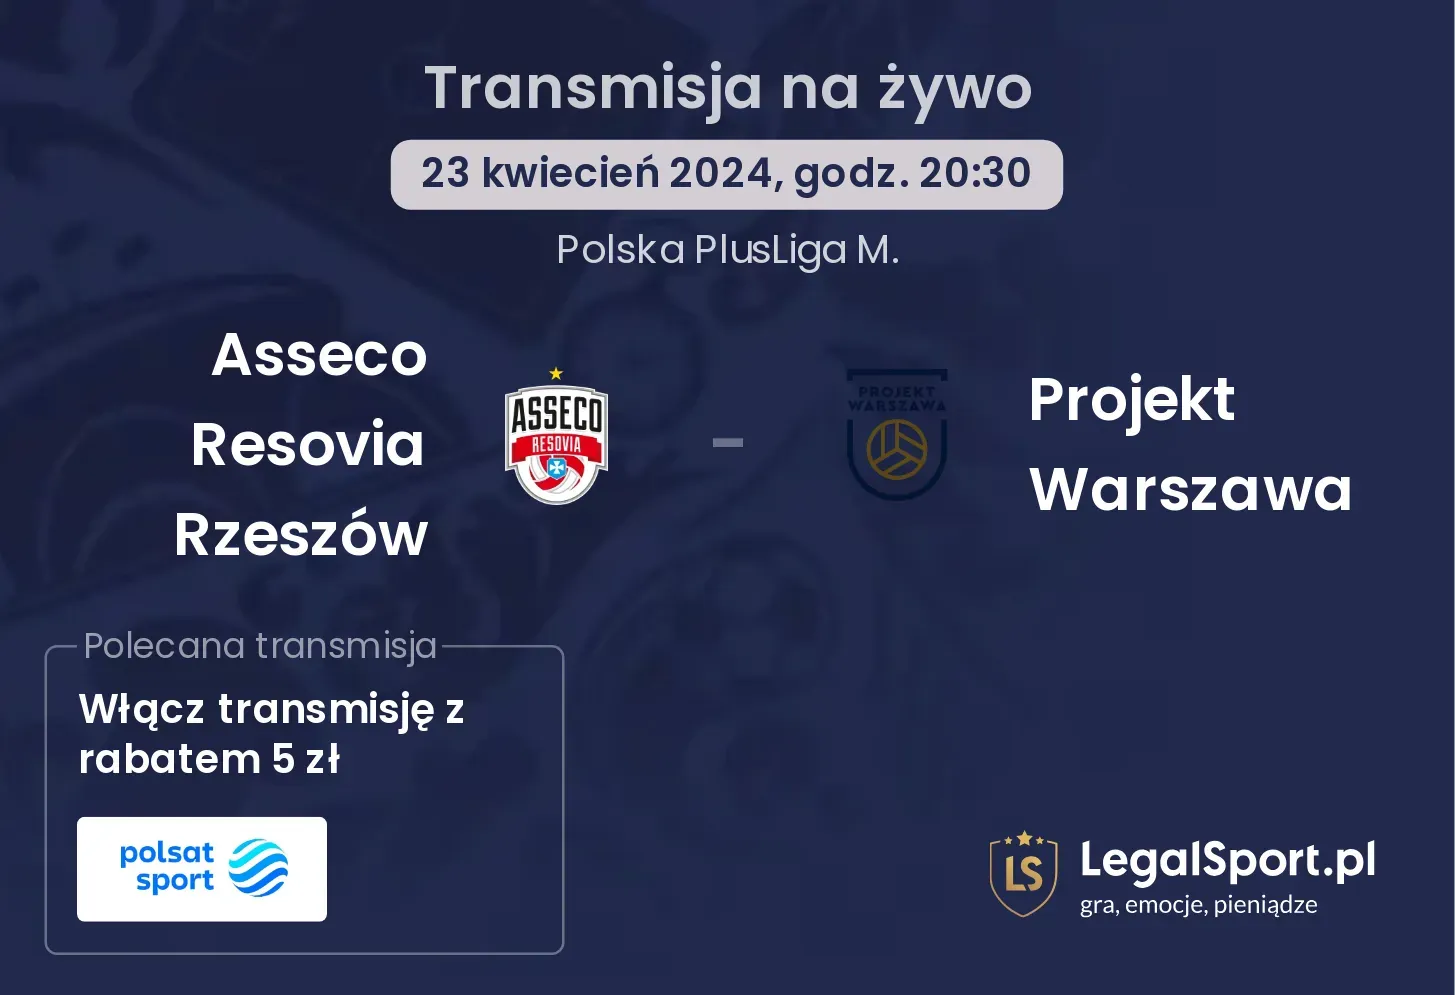 Asseco Resovia Rzeszów - Projekt Warszawa transmisja na żywo